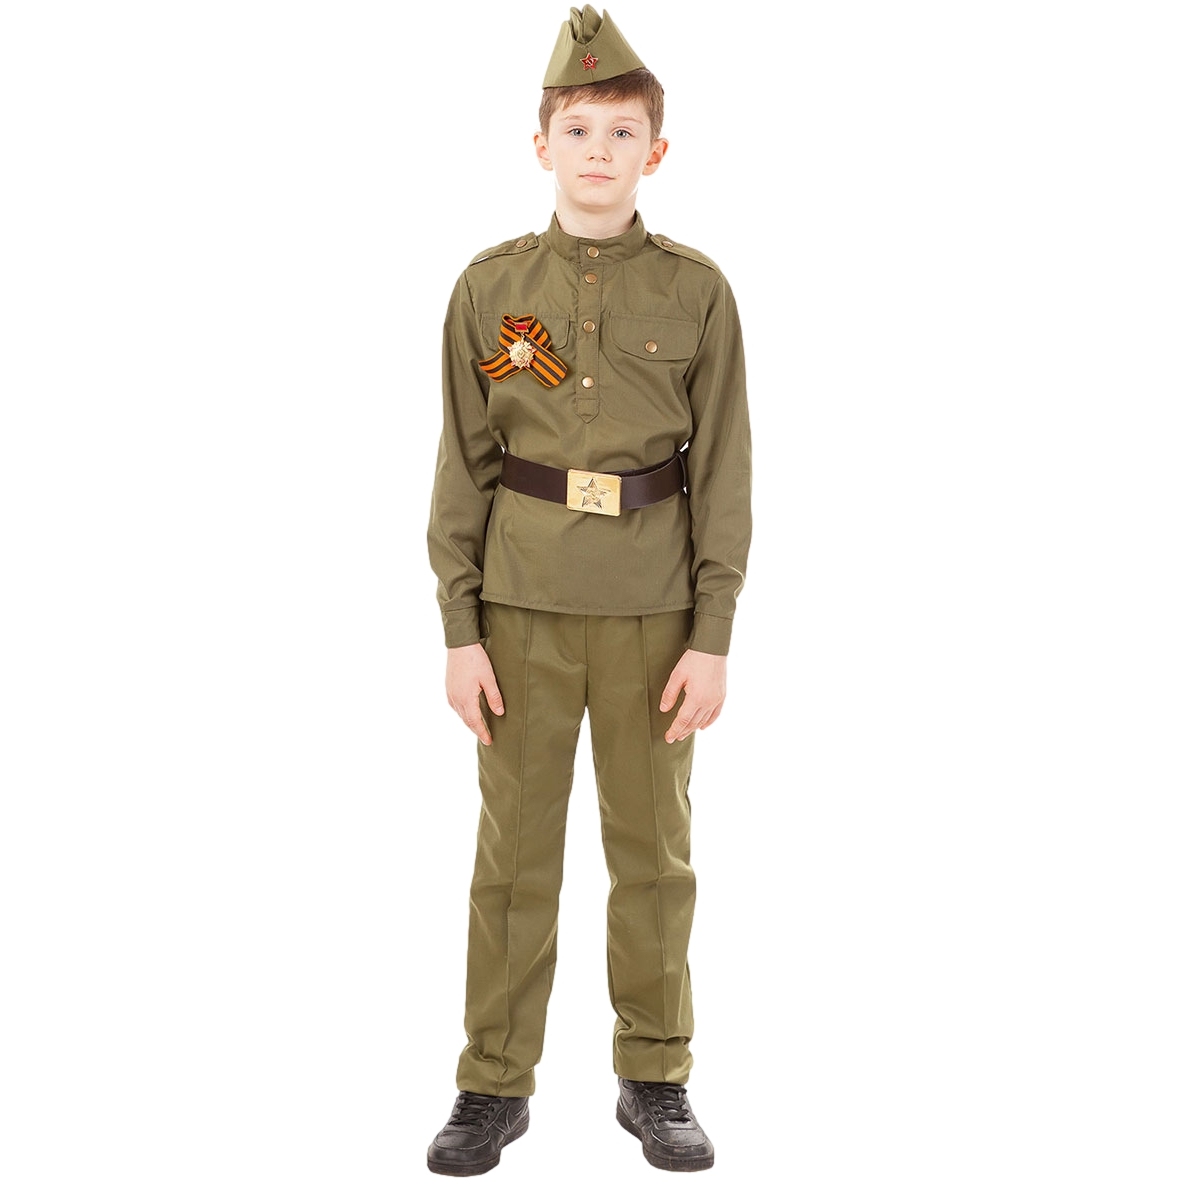 Карнавальный костюм "солдат" (гимнастерка, брюки, пилотка, ремень, георгиевская лента) размер 116-60